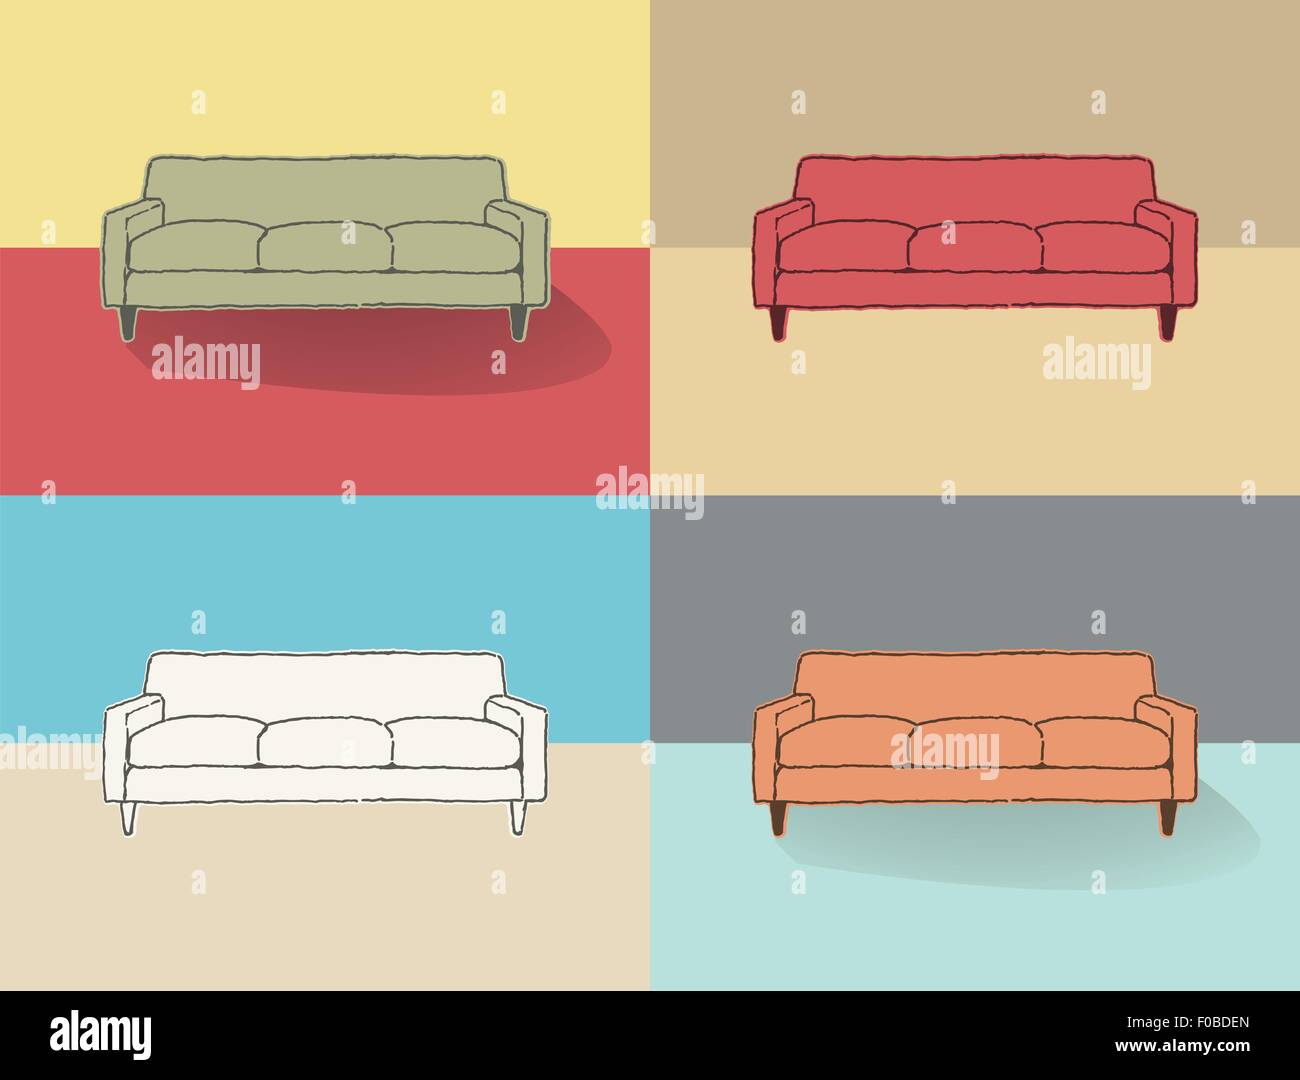 Semplicemente elegante disegno del lettino in quattro soluzioni a colori Foto Stock